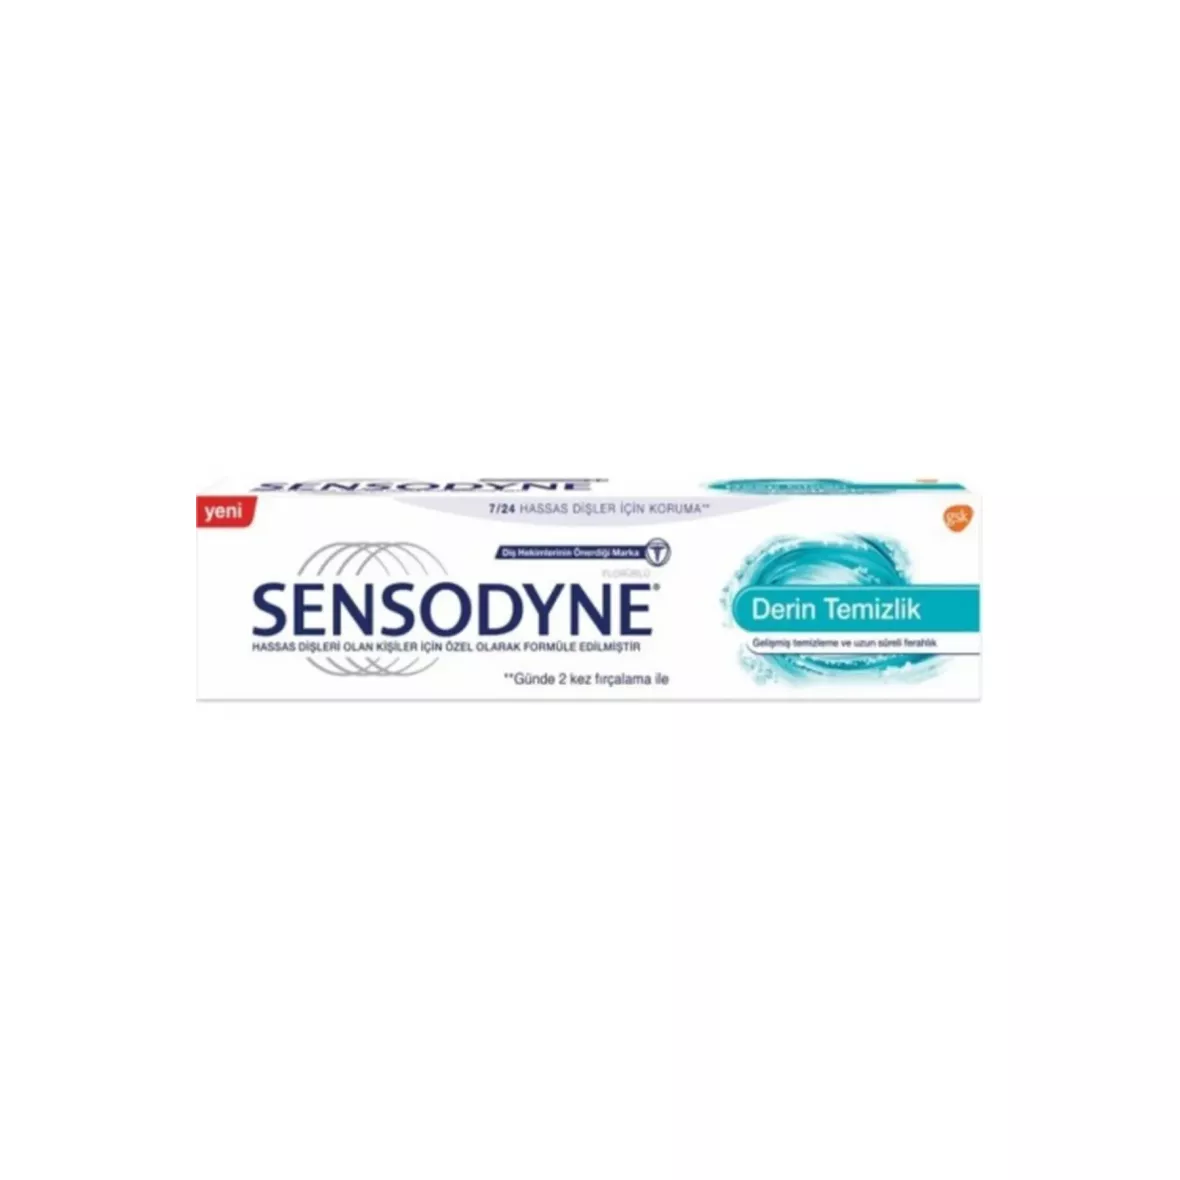 Sensodyne - Sensodyne Derin Temizlik Diş Macunu 20 ml